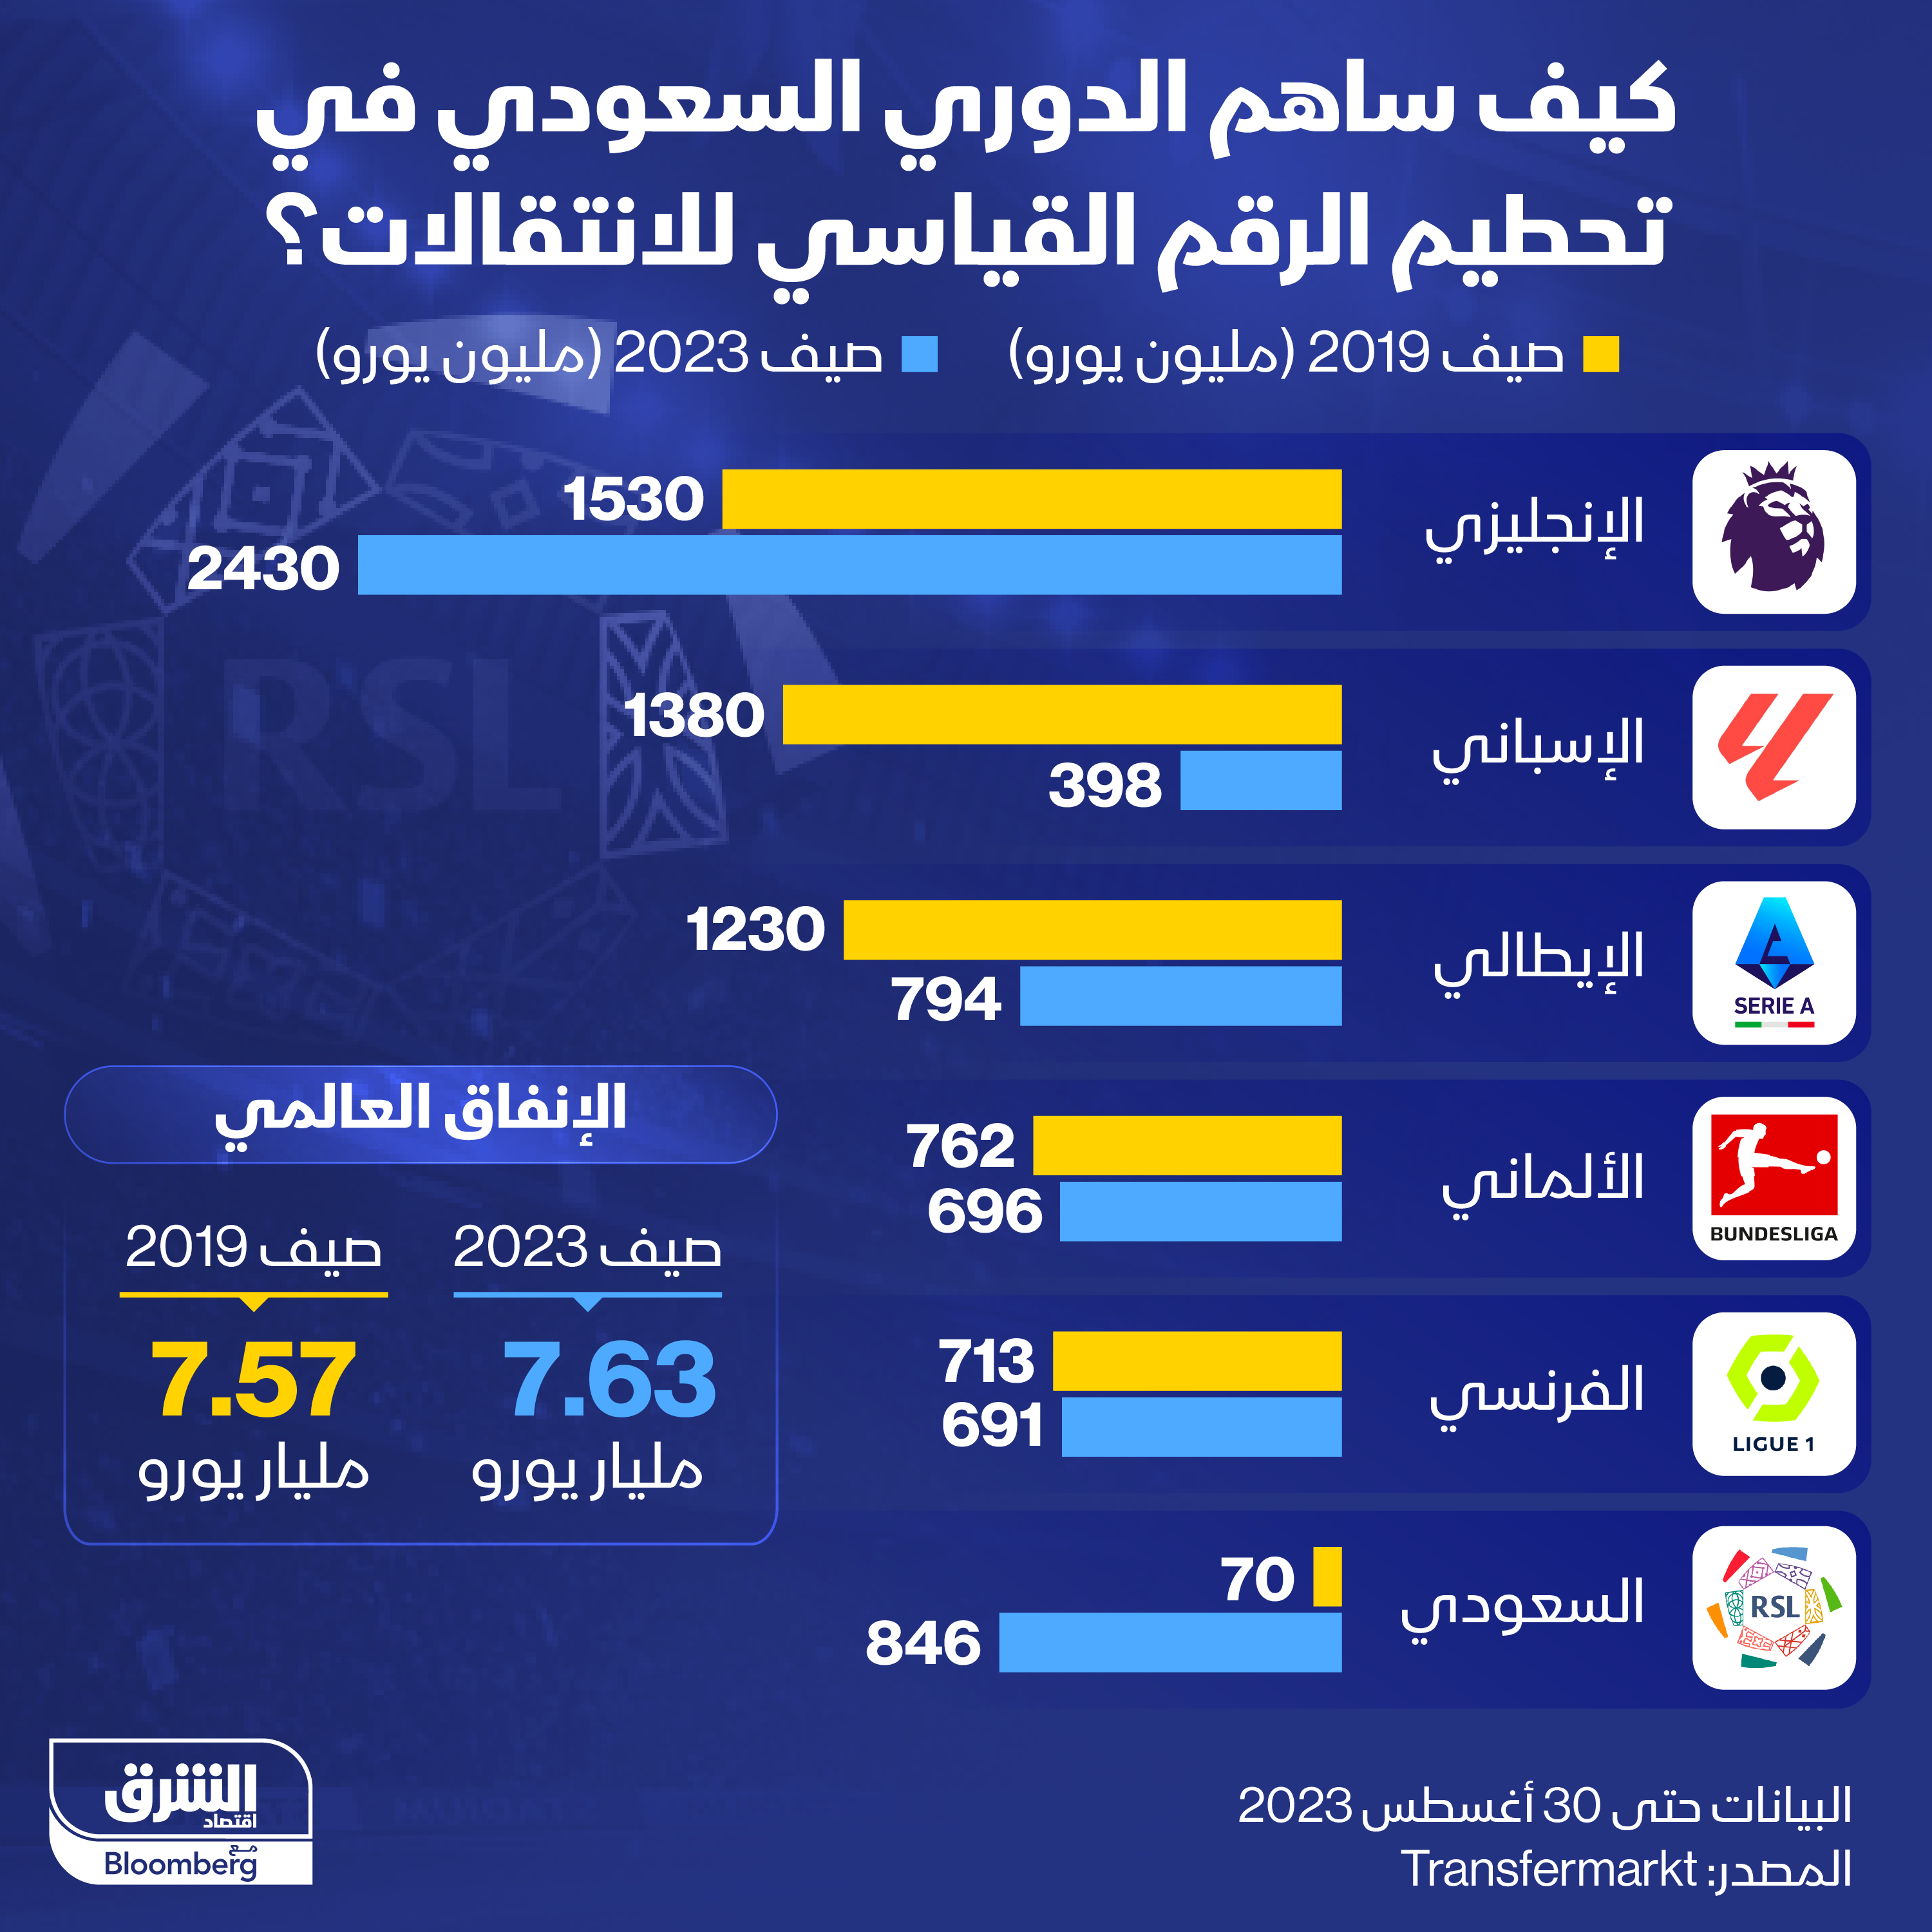 الدوري السعودي كان اللاعب الرئيسي هذا العام بتحقيق رقم قياسي على صعيد انتقال لاعبي كرة القدم العالميين